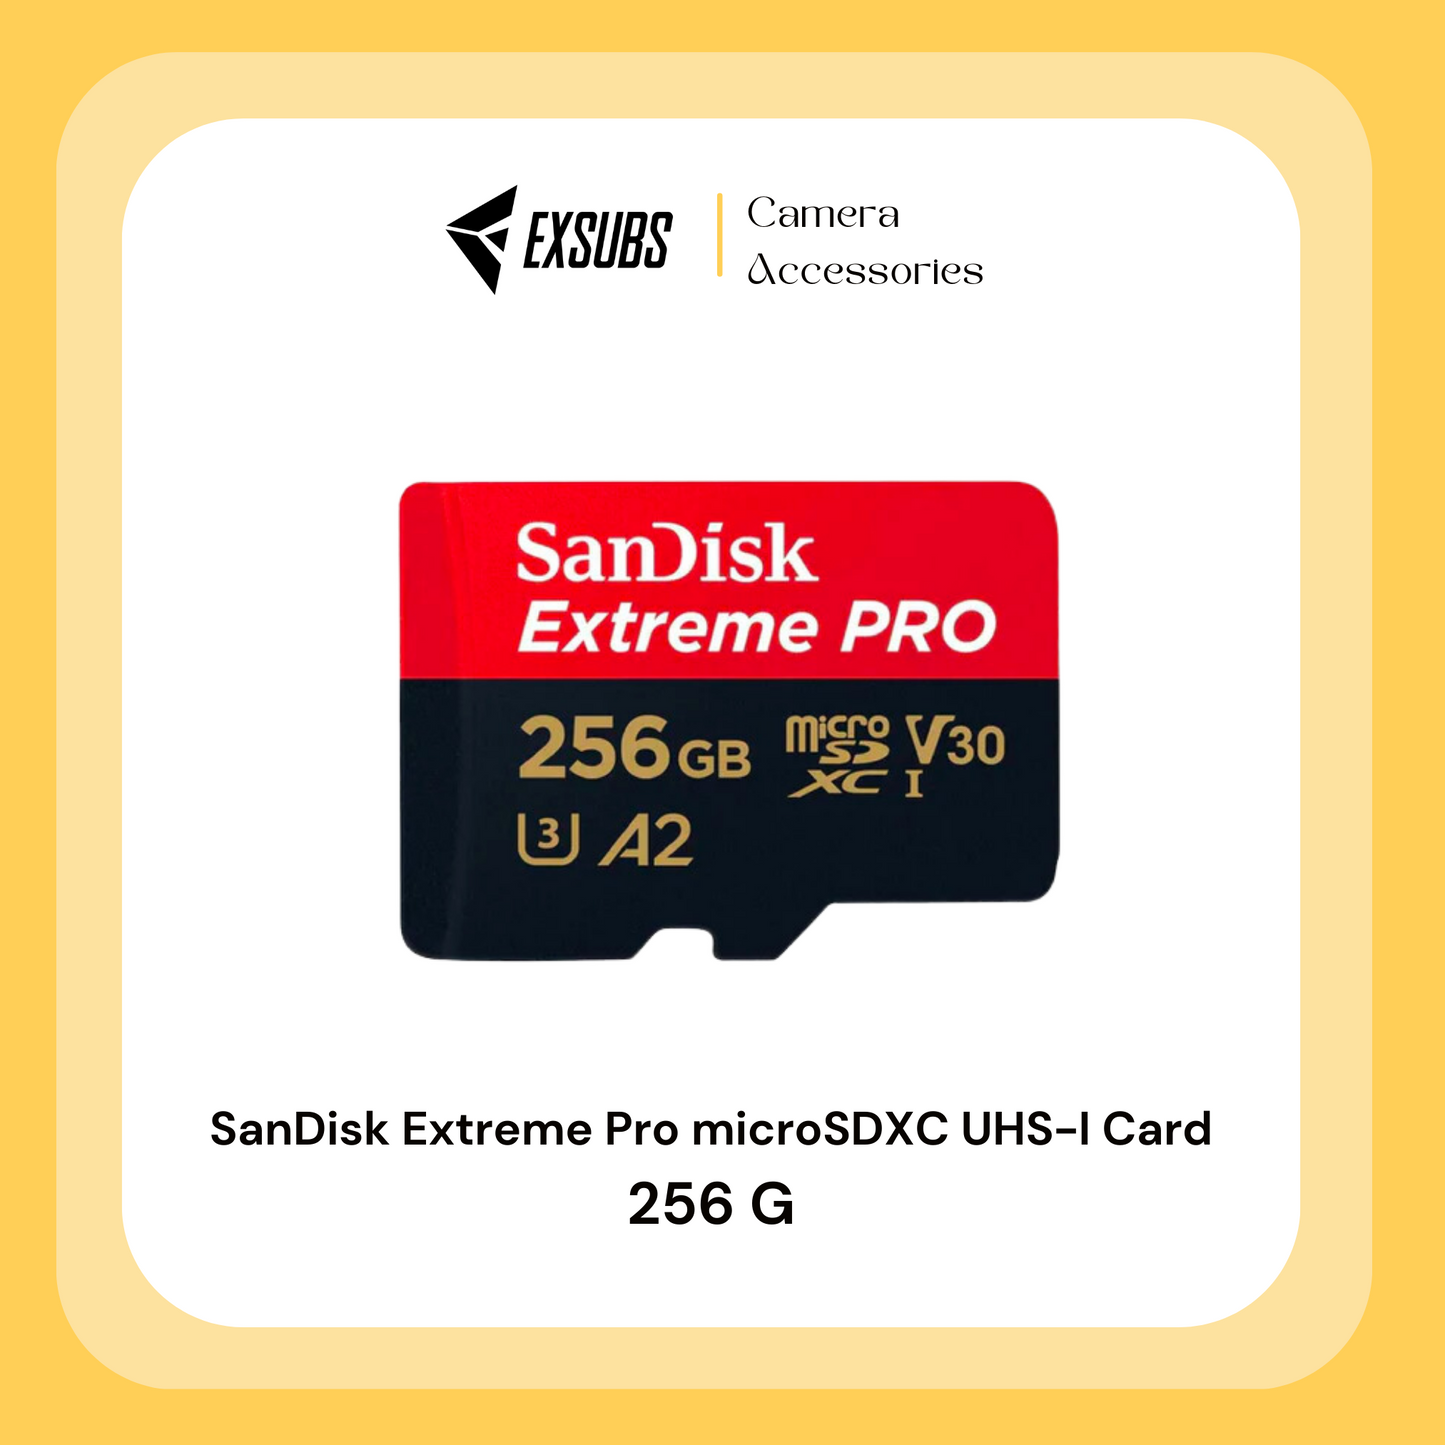 SanDisk Extreme Pro microSDXC UHS-I Card